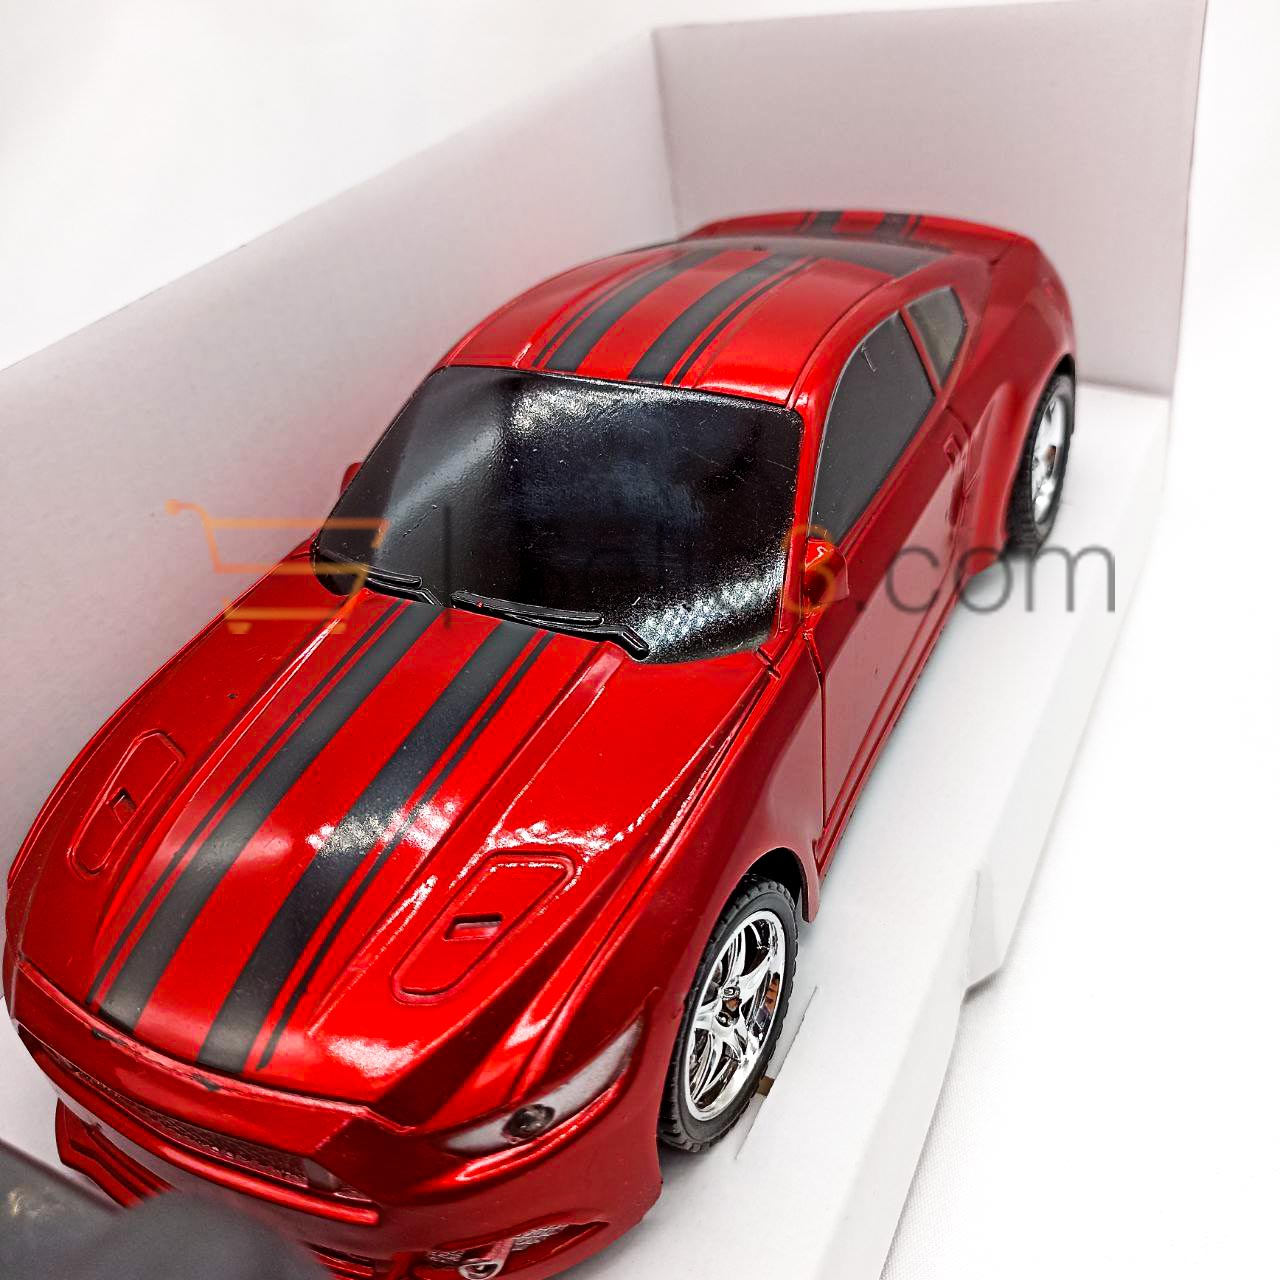 سيارة مستانج لاسلكية Mustang Sansfil Miniature Model Wireless Car Toy